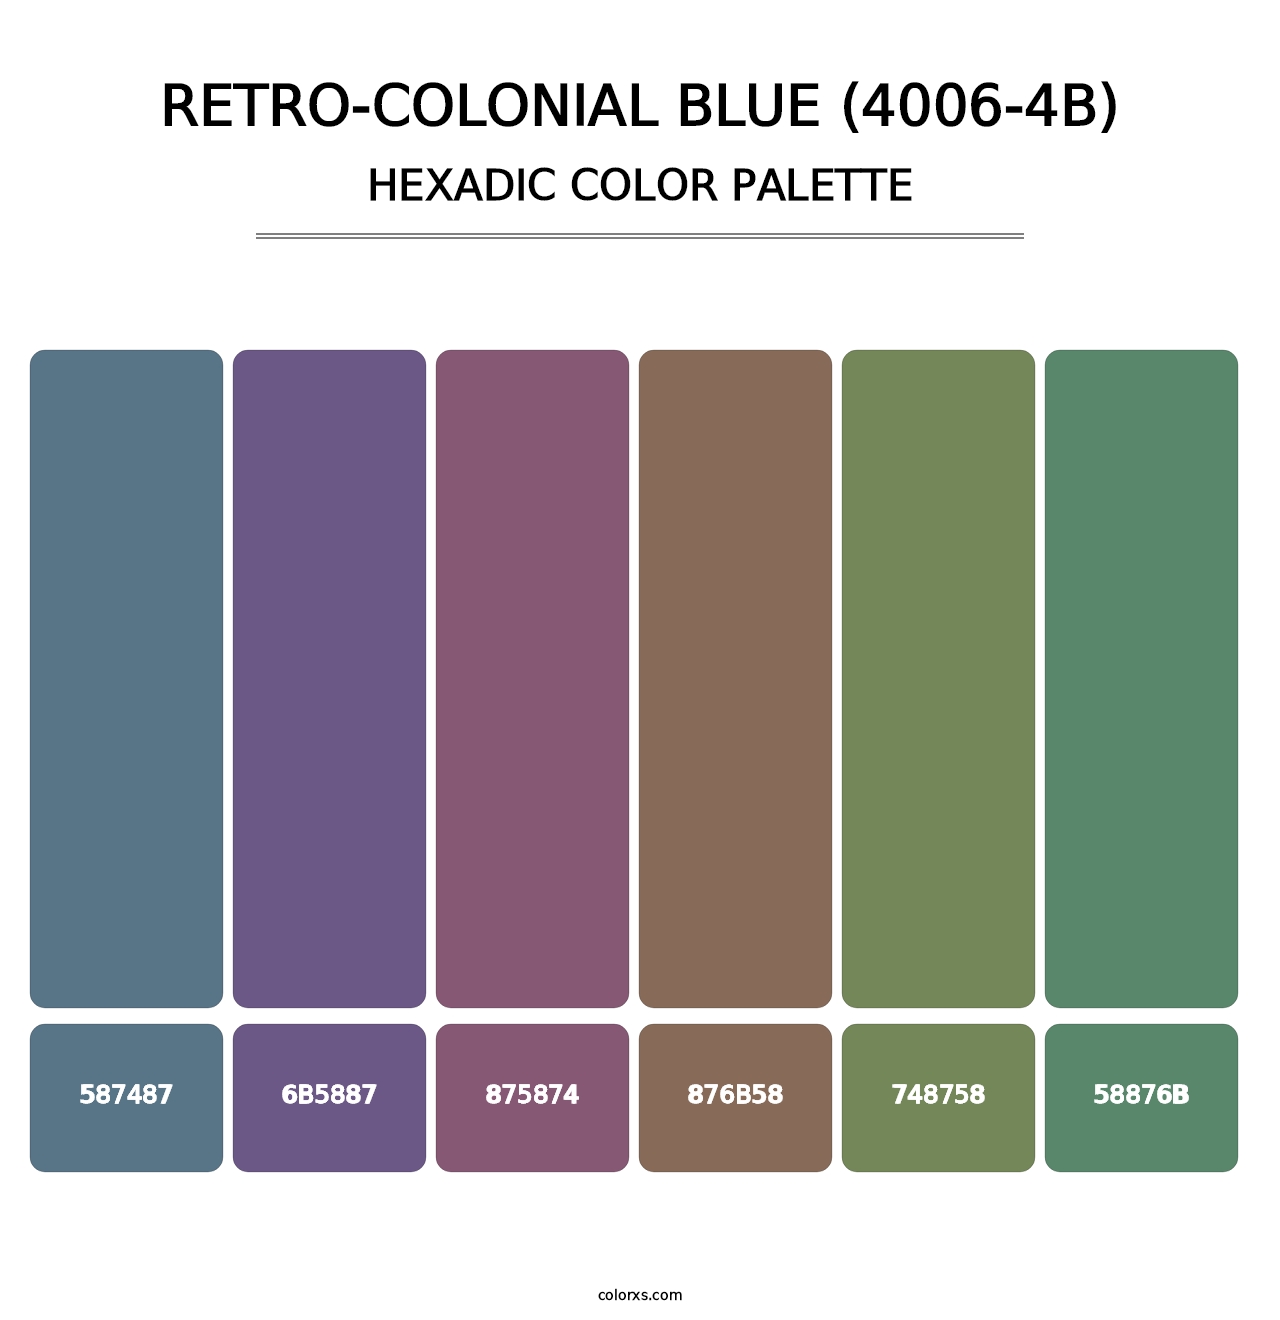 Retro-Colonial Blue (4006-4B) - Hexadic Color Palette